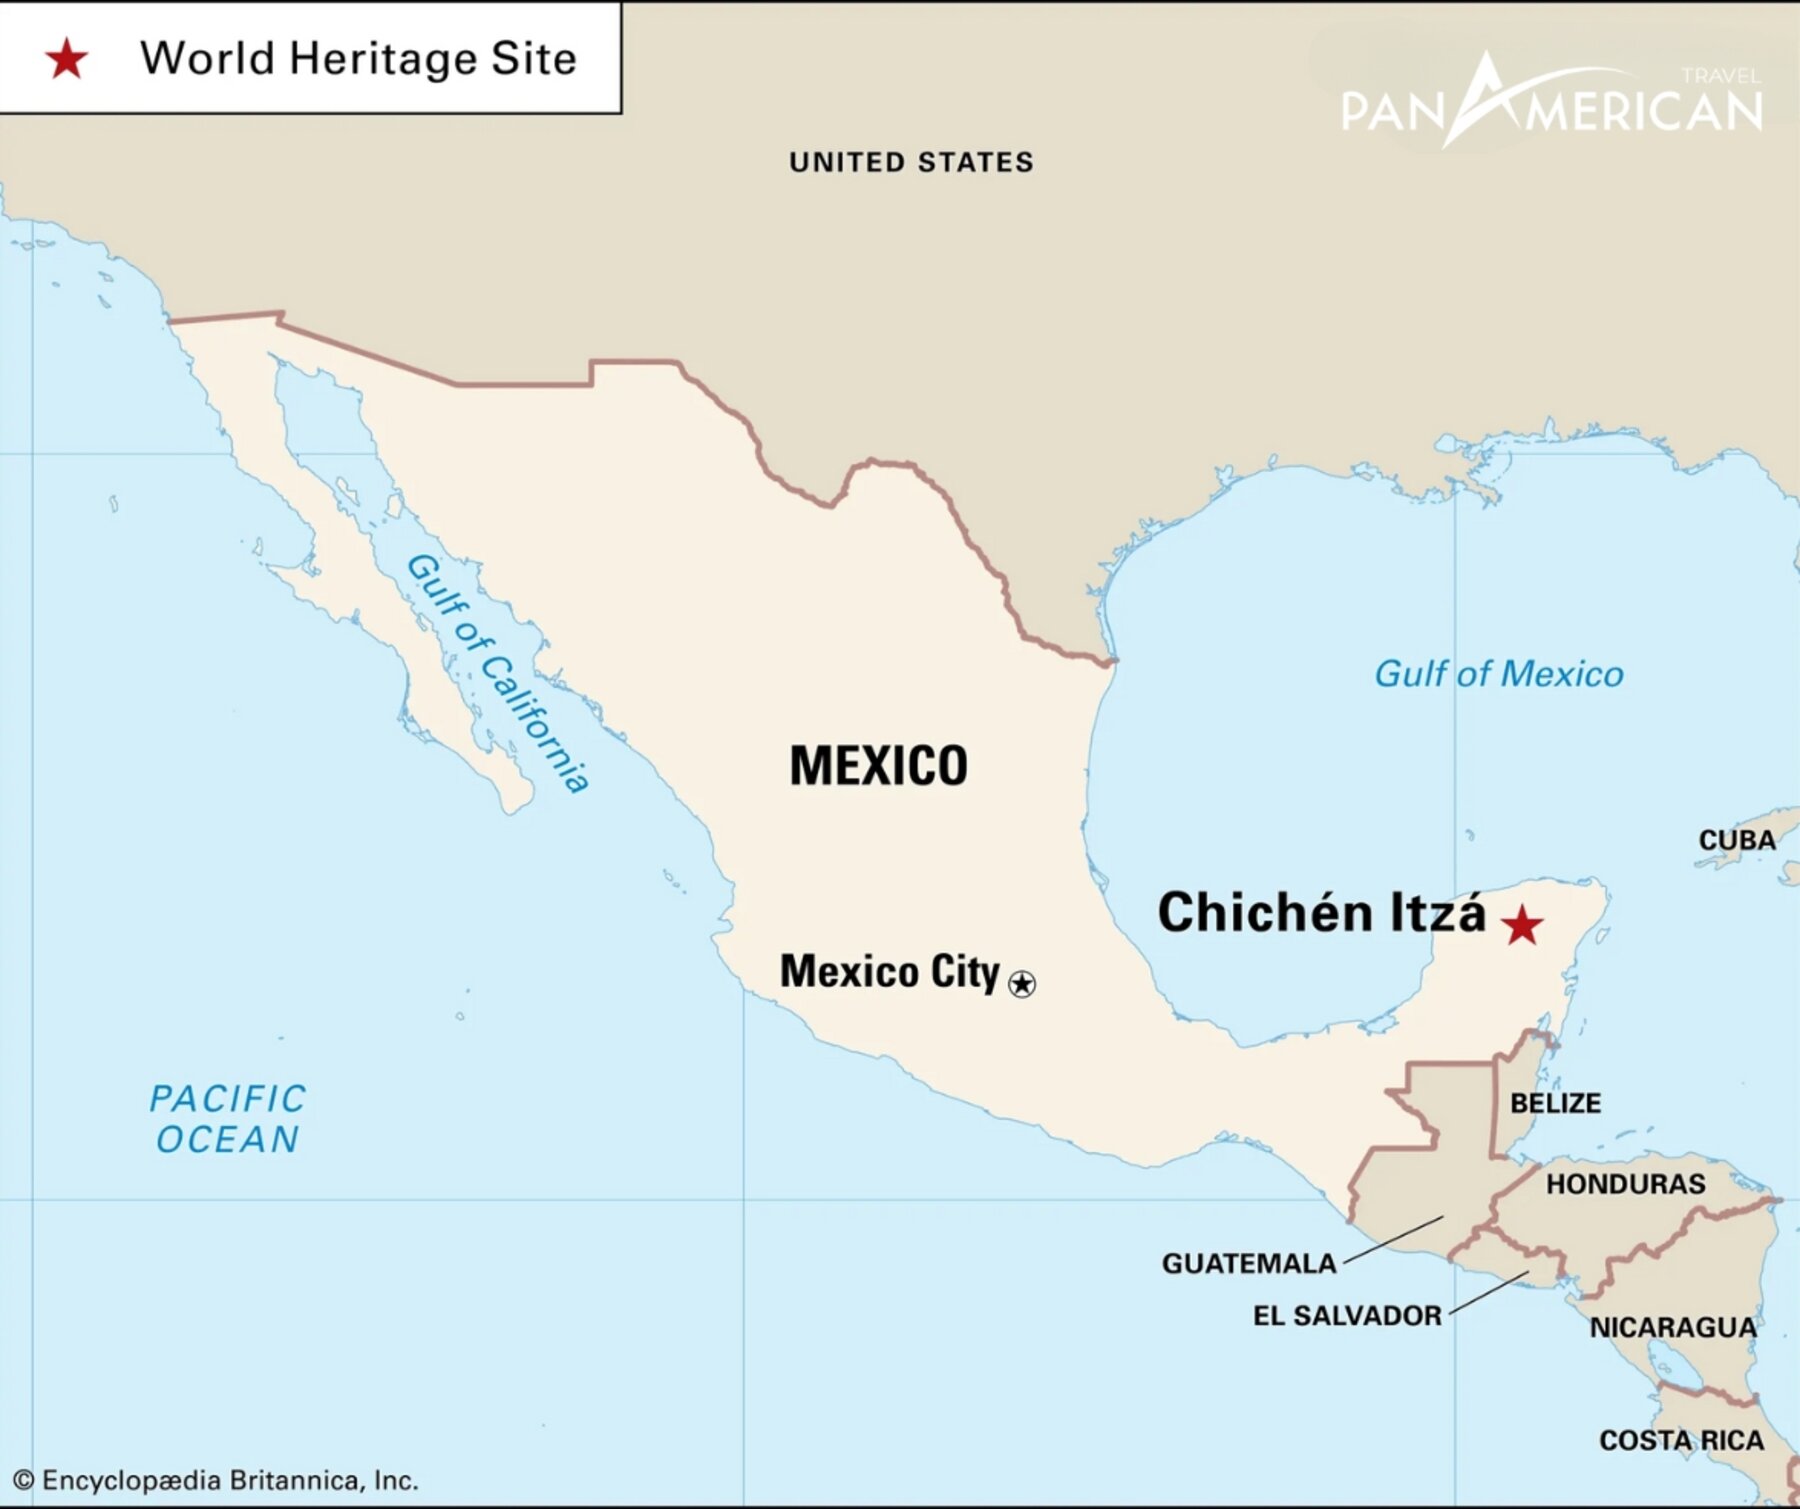 Chichen Itza nằm ở phía bắc bán đảo Yucatan